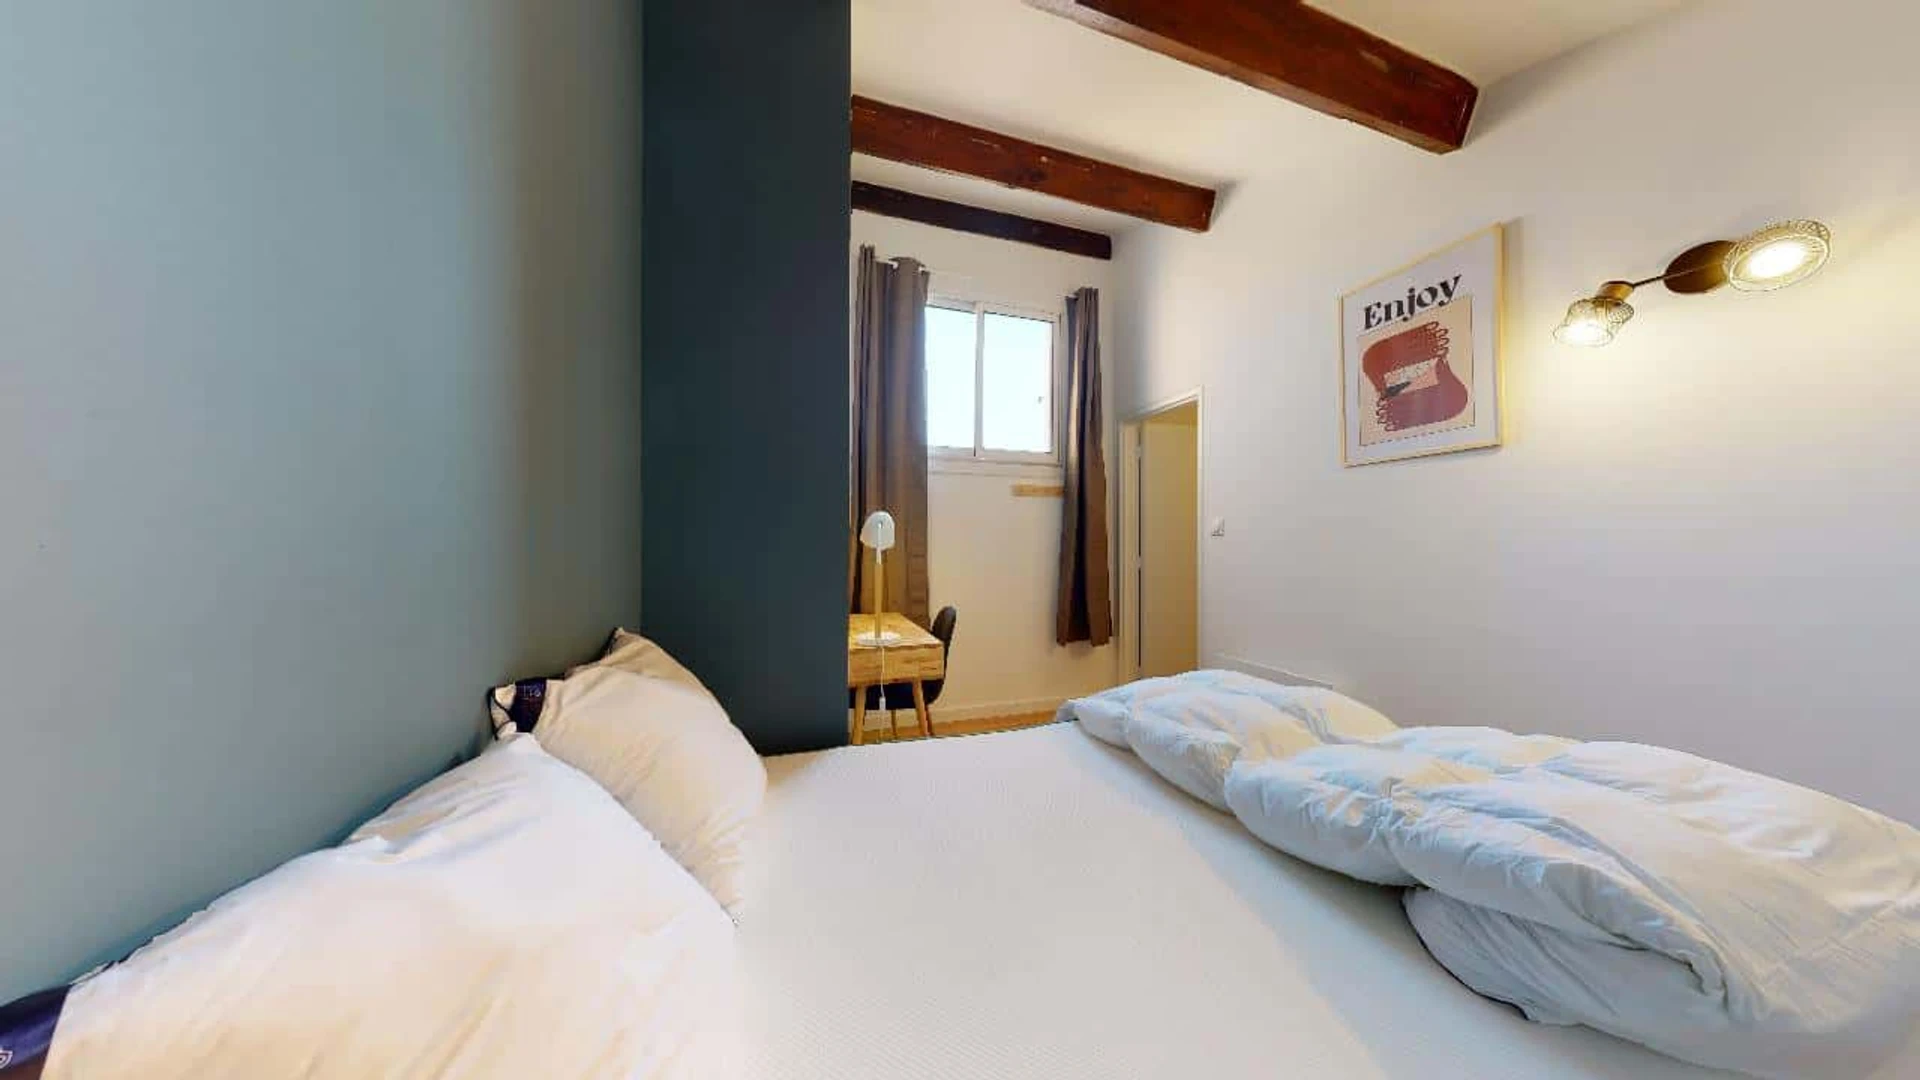 Stanza privata con letto matrimoniale Aix-en-provence